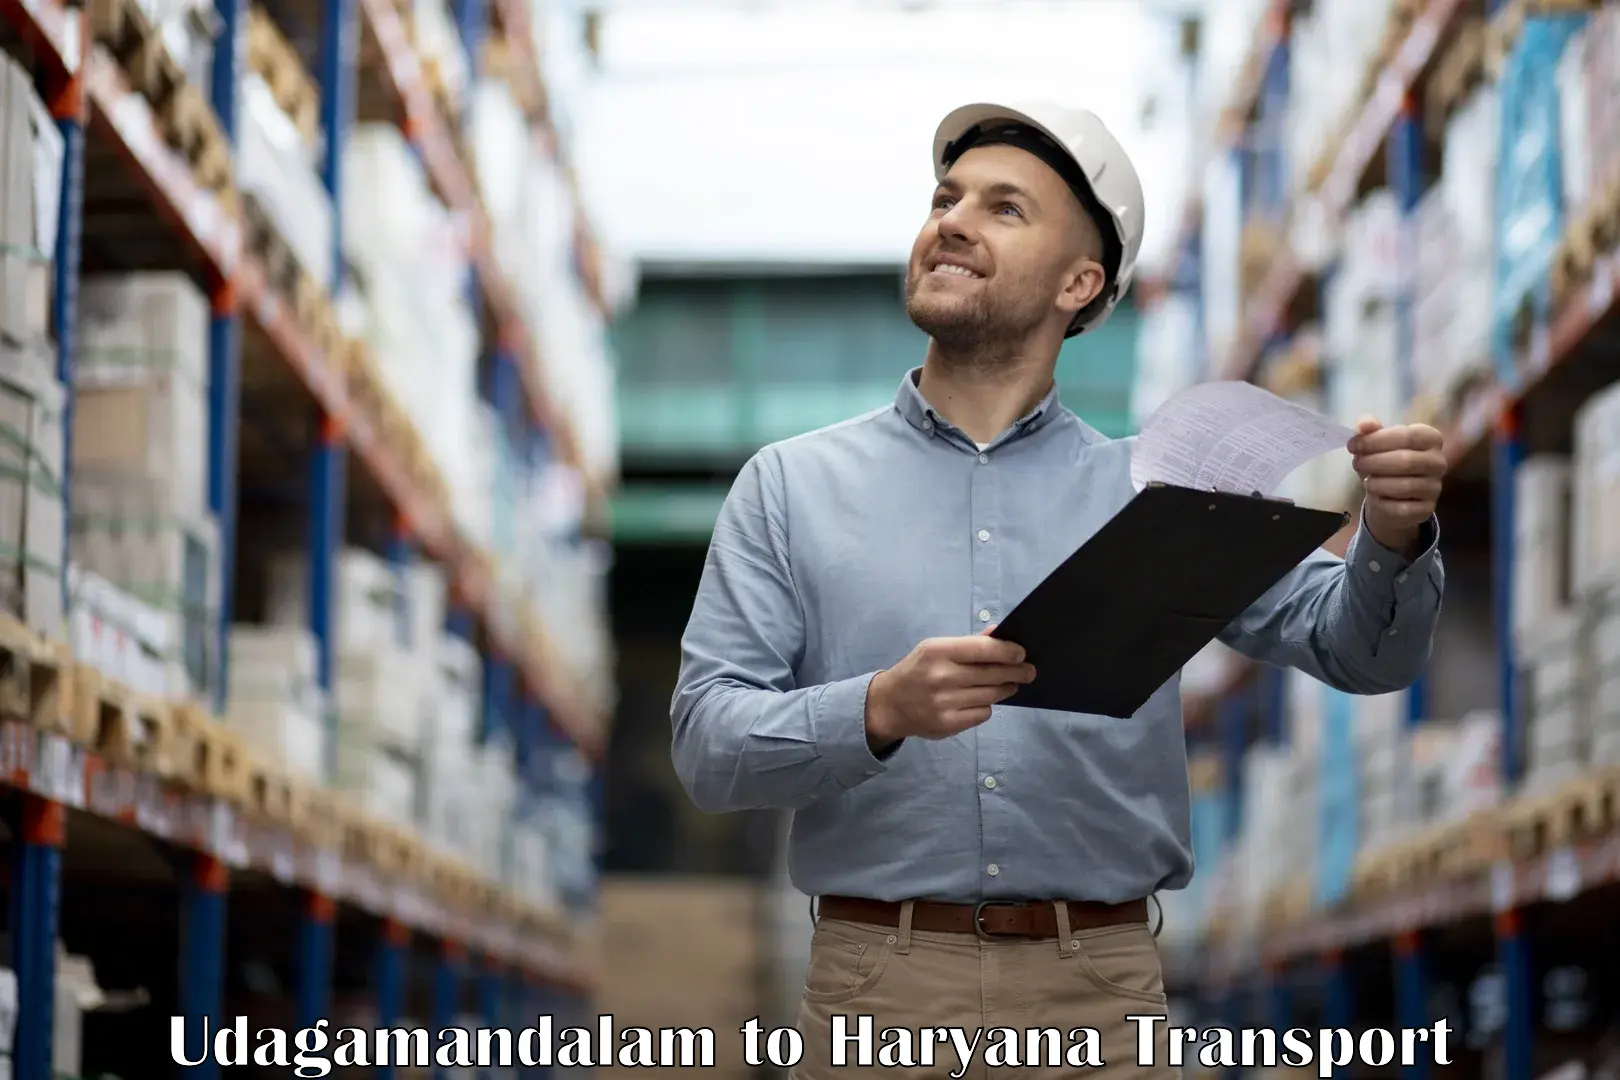 Shipping partner Udagamandalam to Narwana